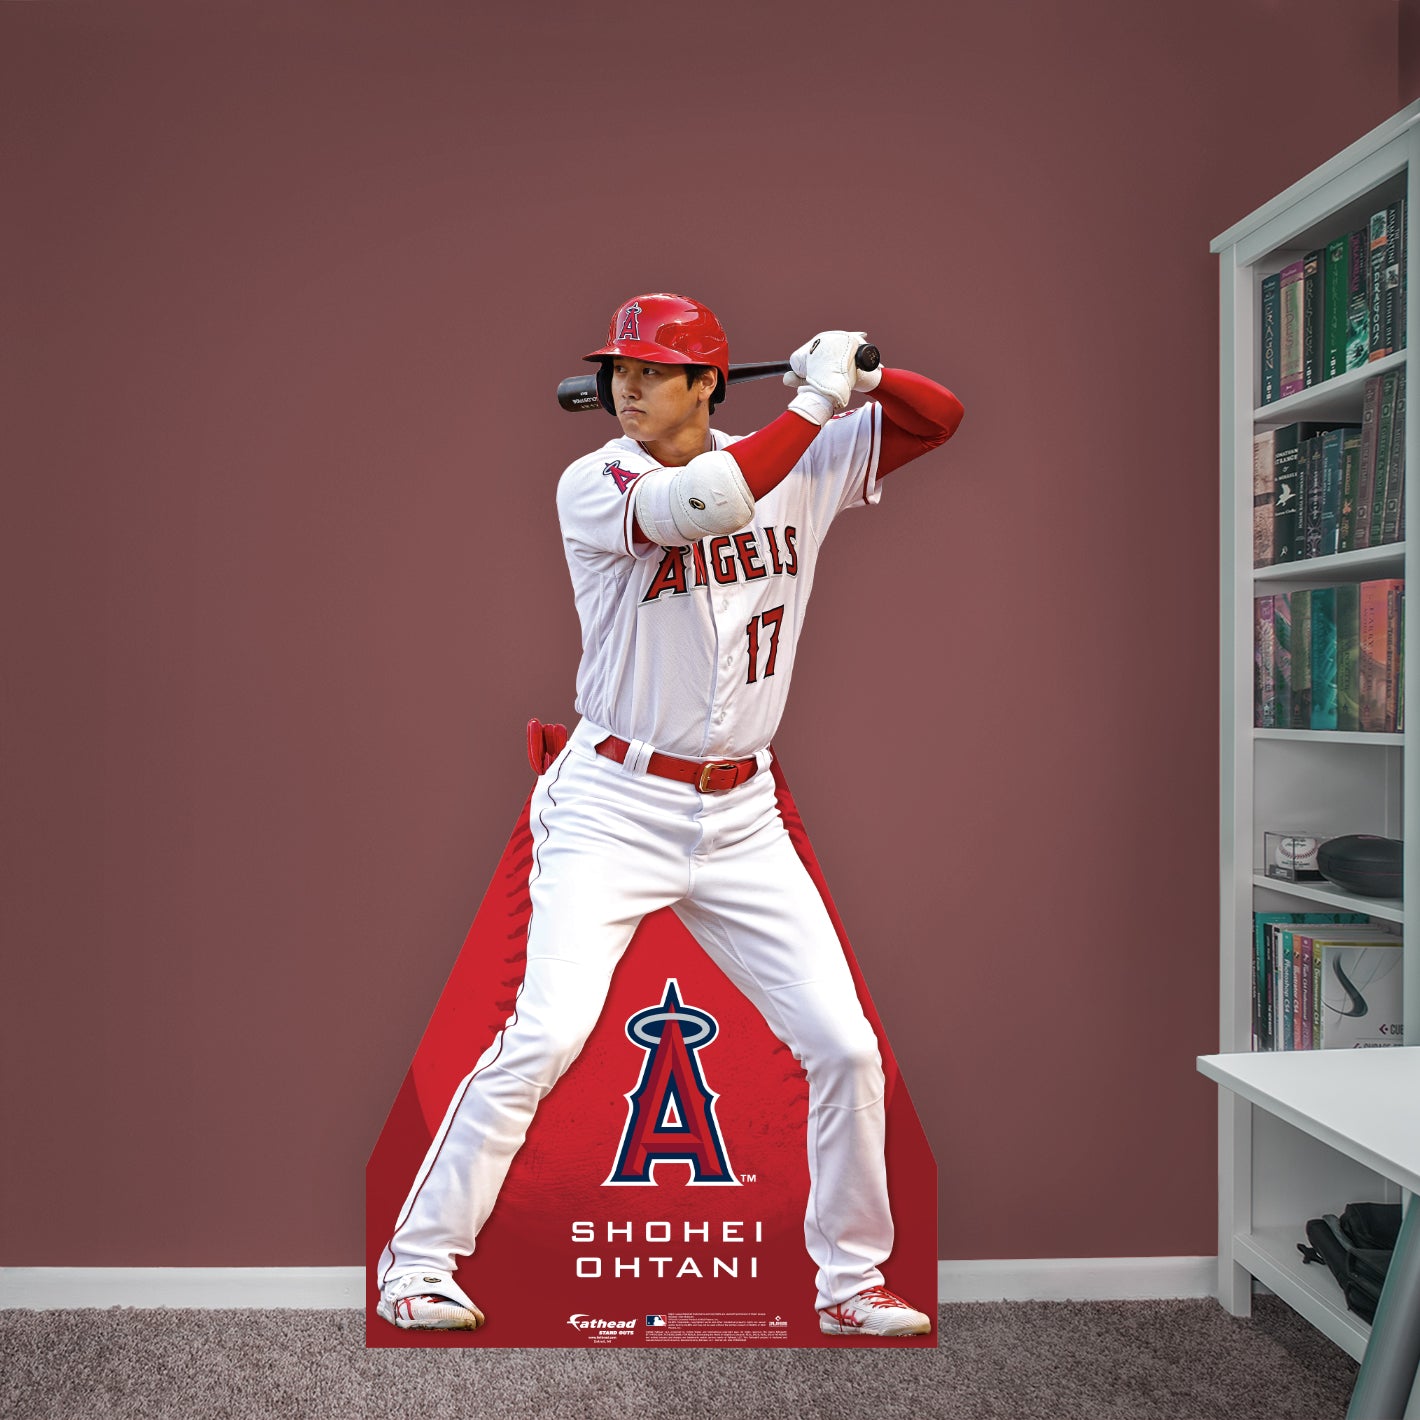 Lids Shohei Ohtani Los Angeles Angels Fanatics Authentic Autographed 8 x  10 2021 AL MVP Collage